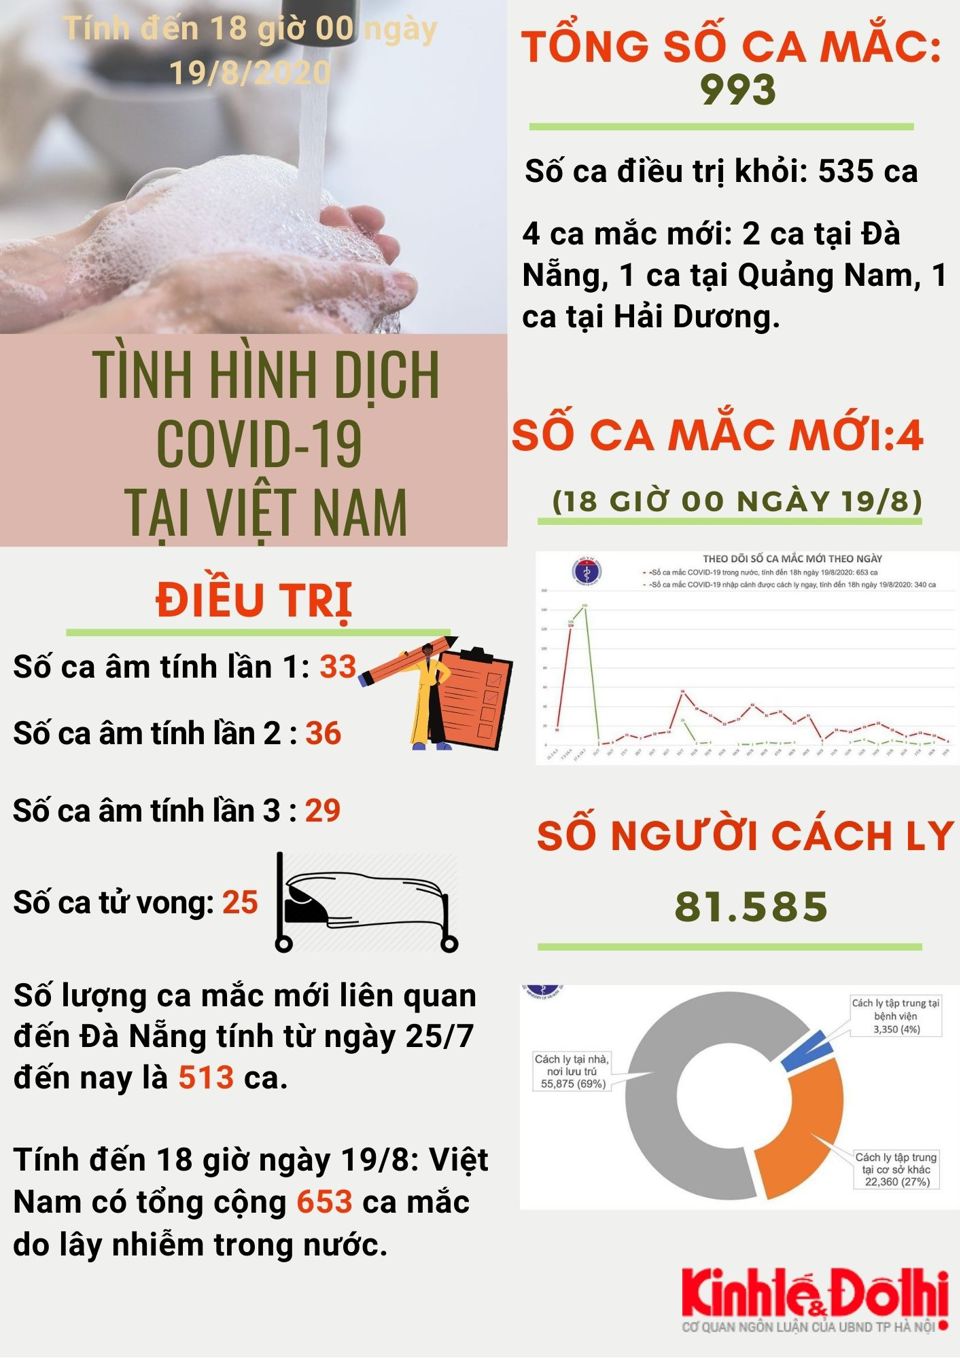 [Infographic] Việt Nam ghi nhận 653 ca mắc Covid-19 do lây nhiễm trong nước - Ảnh 1